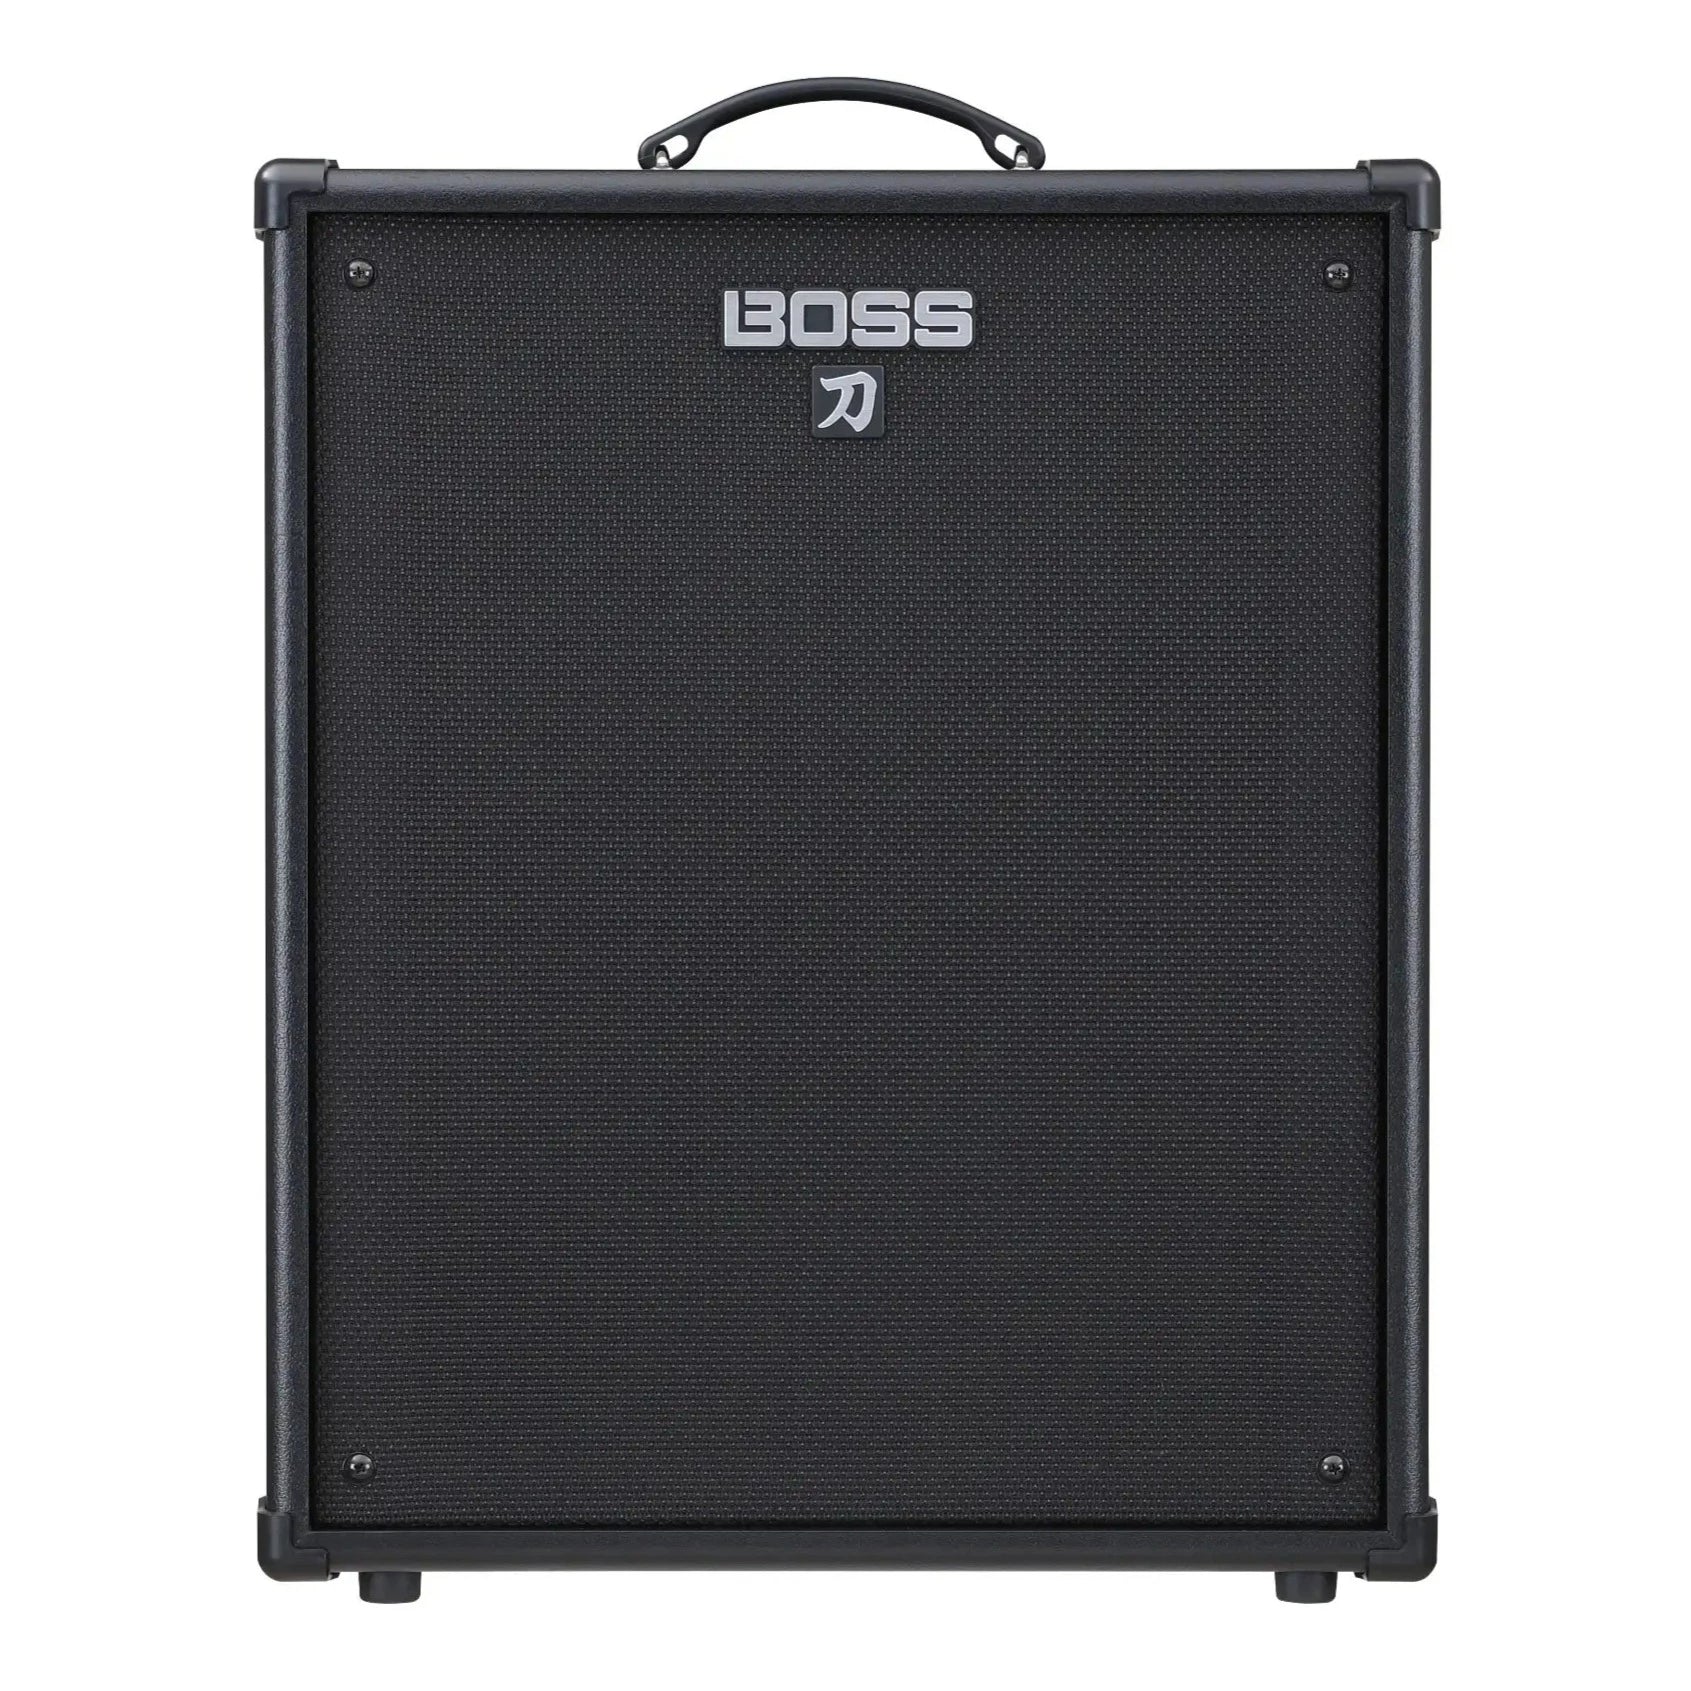 Boss Katana-210 Bass Amplifier